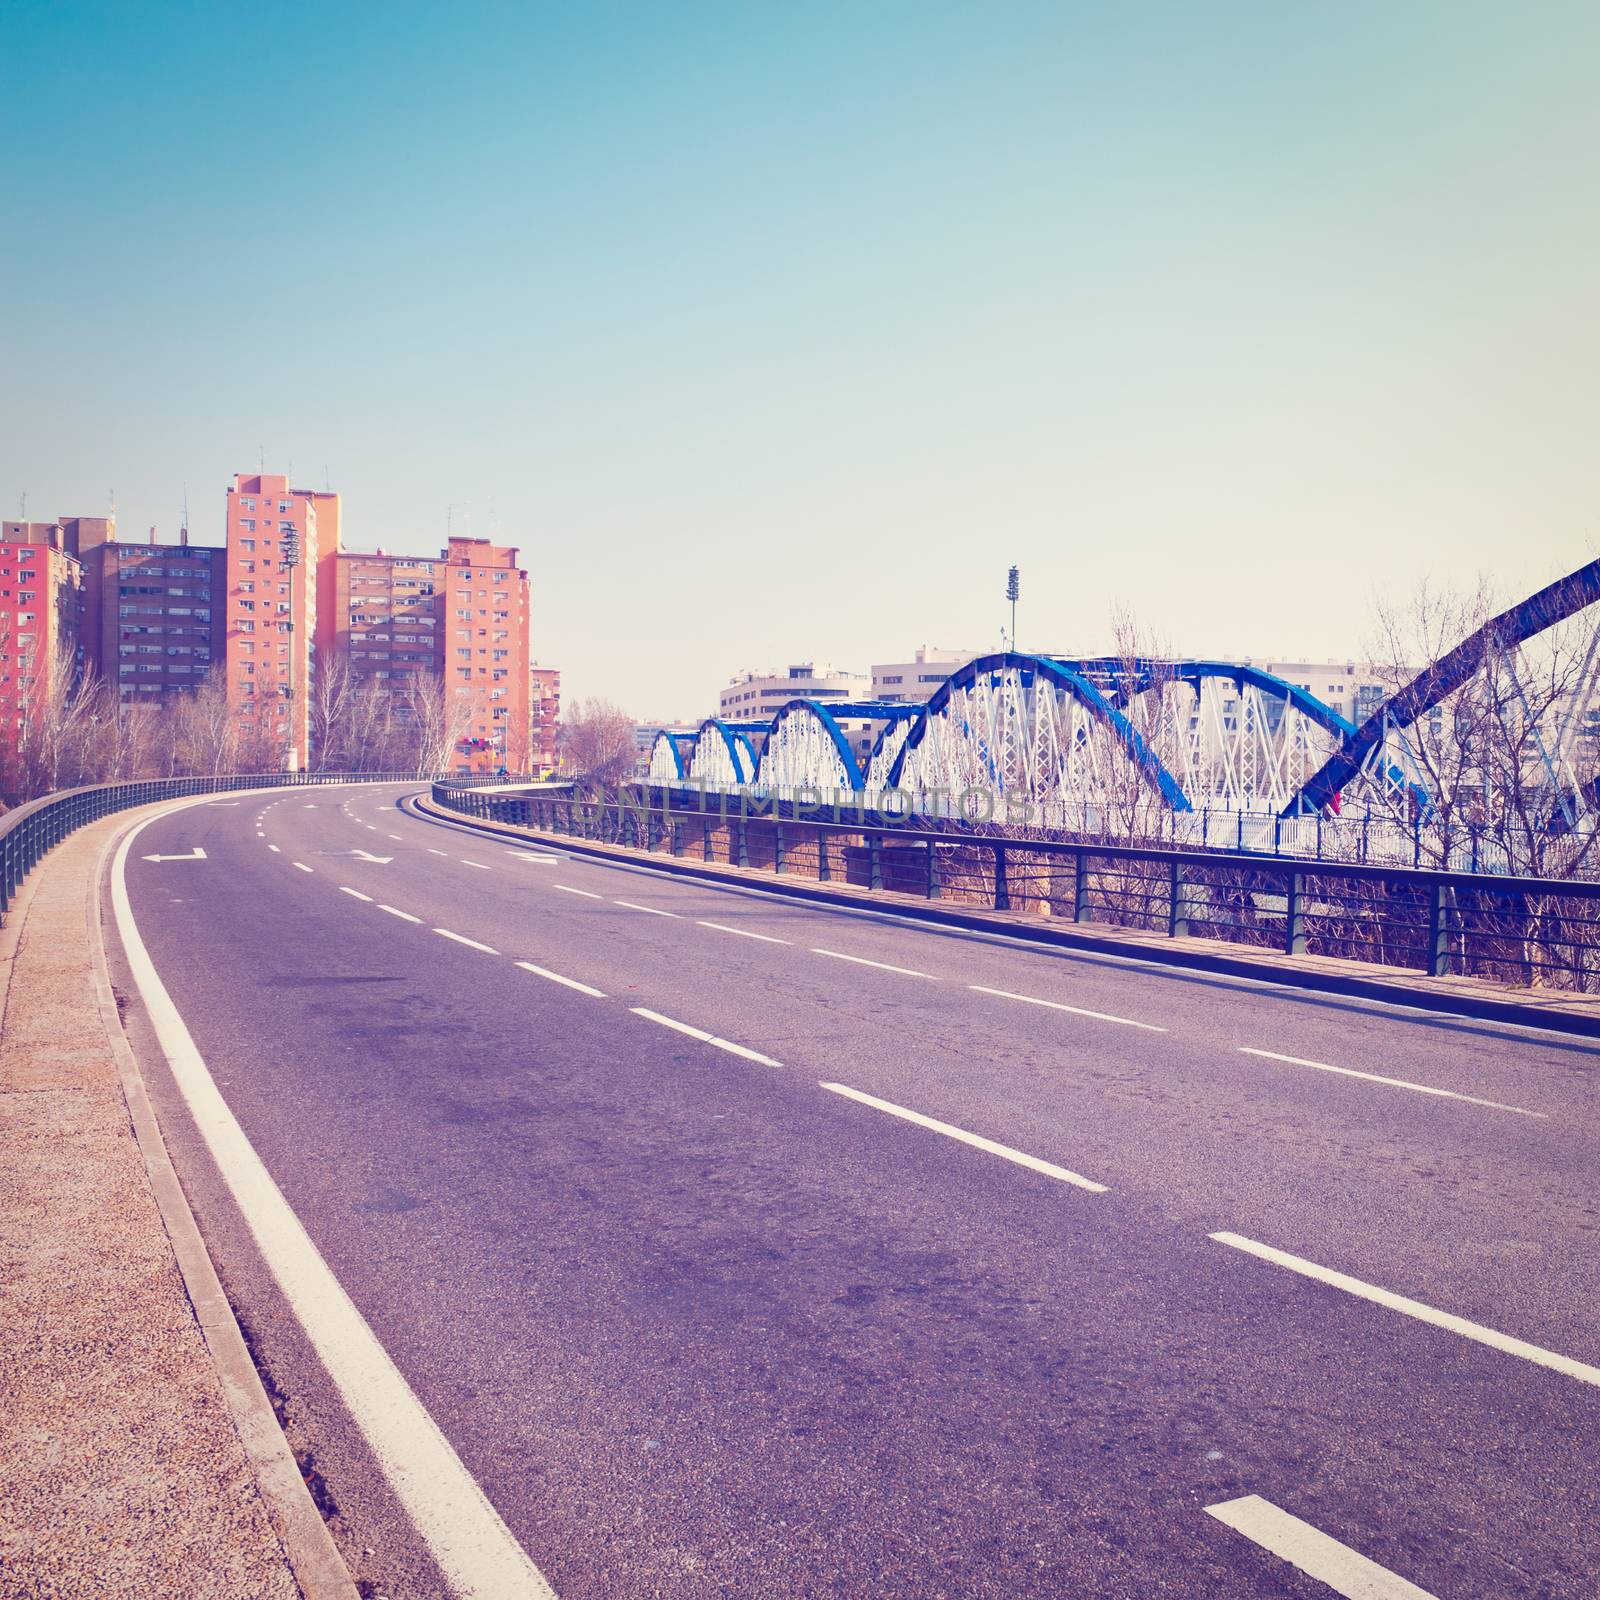 Metal Bridge over the River Ebro in Zaragoza, Instagram Effect